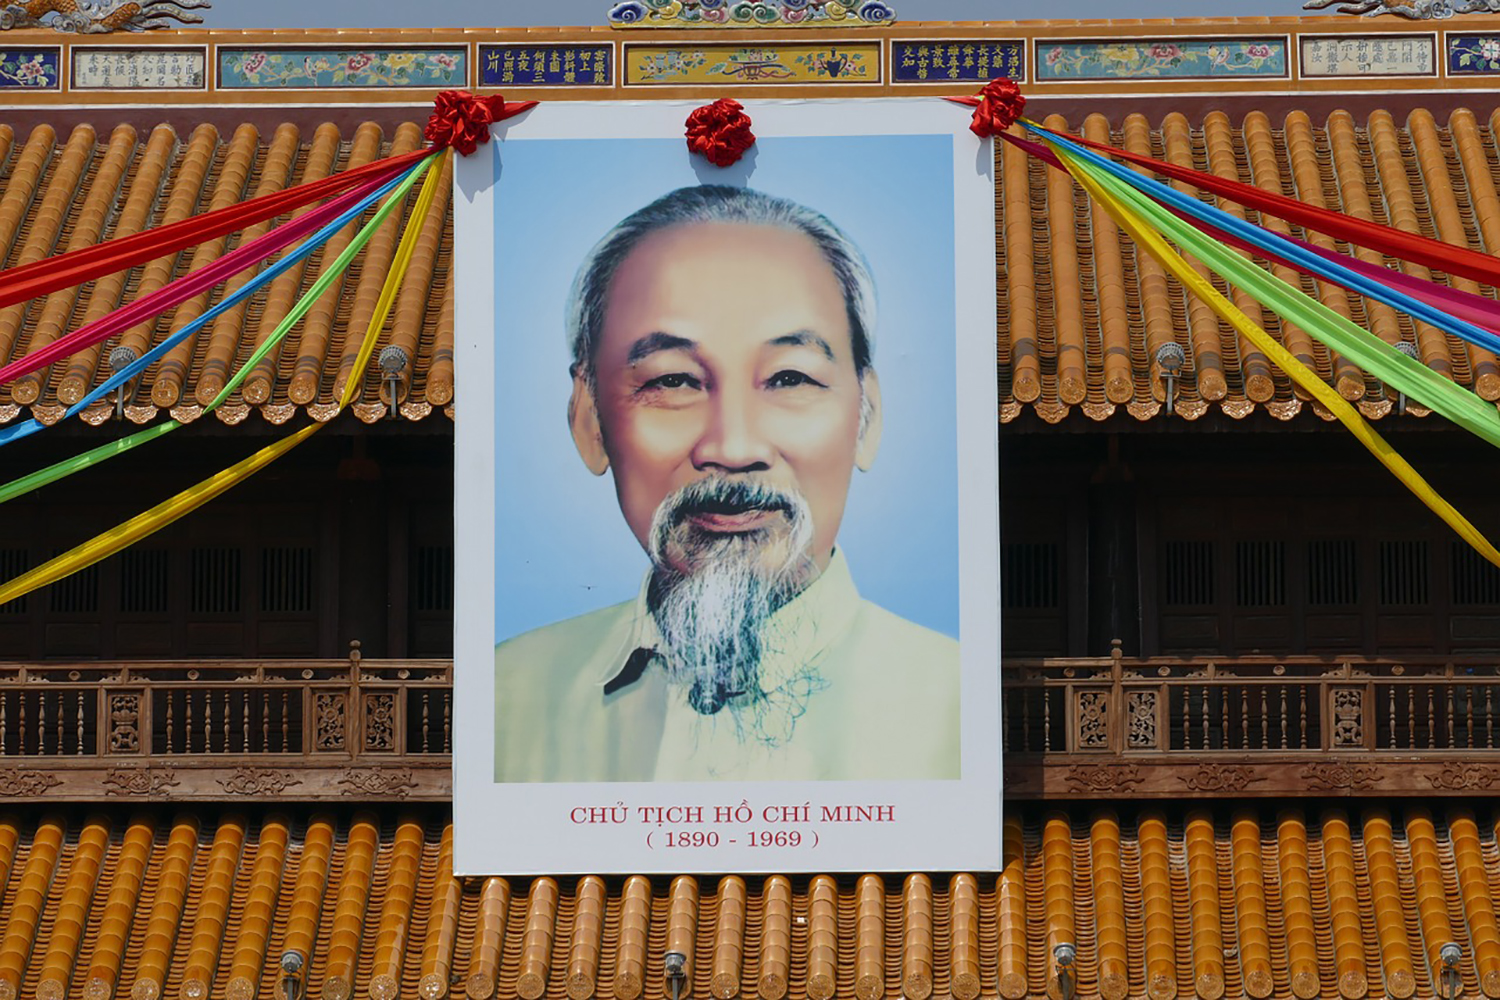 Sur le Palais Royal de la cité impériale d’Huê trône désormais une immense photo d’Hô Chi Minh, le fondateur de la Répubique Démocratique du Vietnam. ©pixabay creative commons CC0